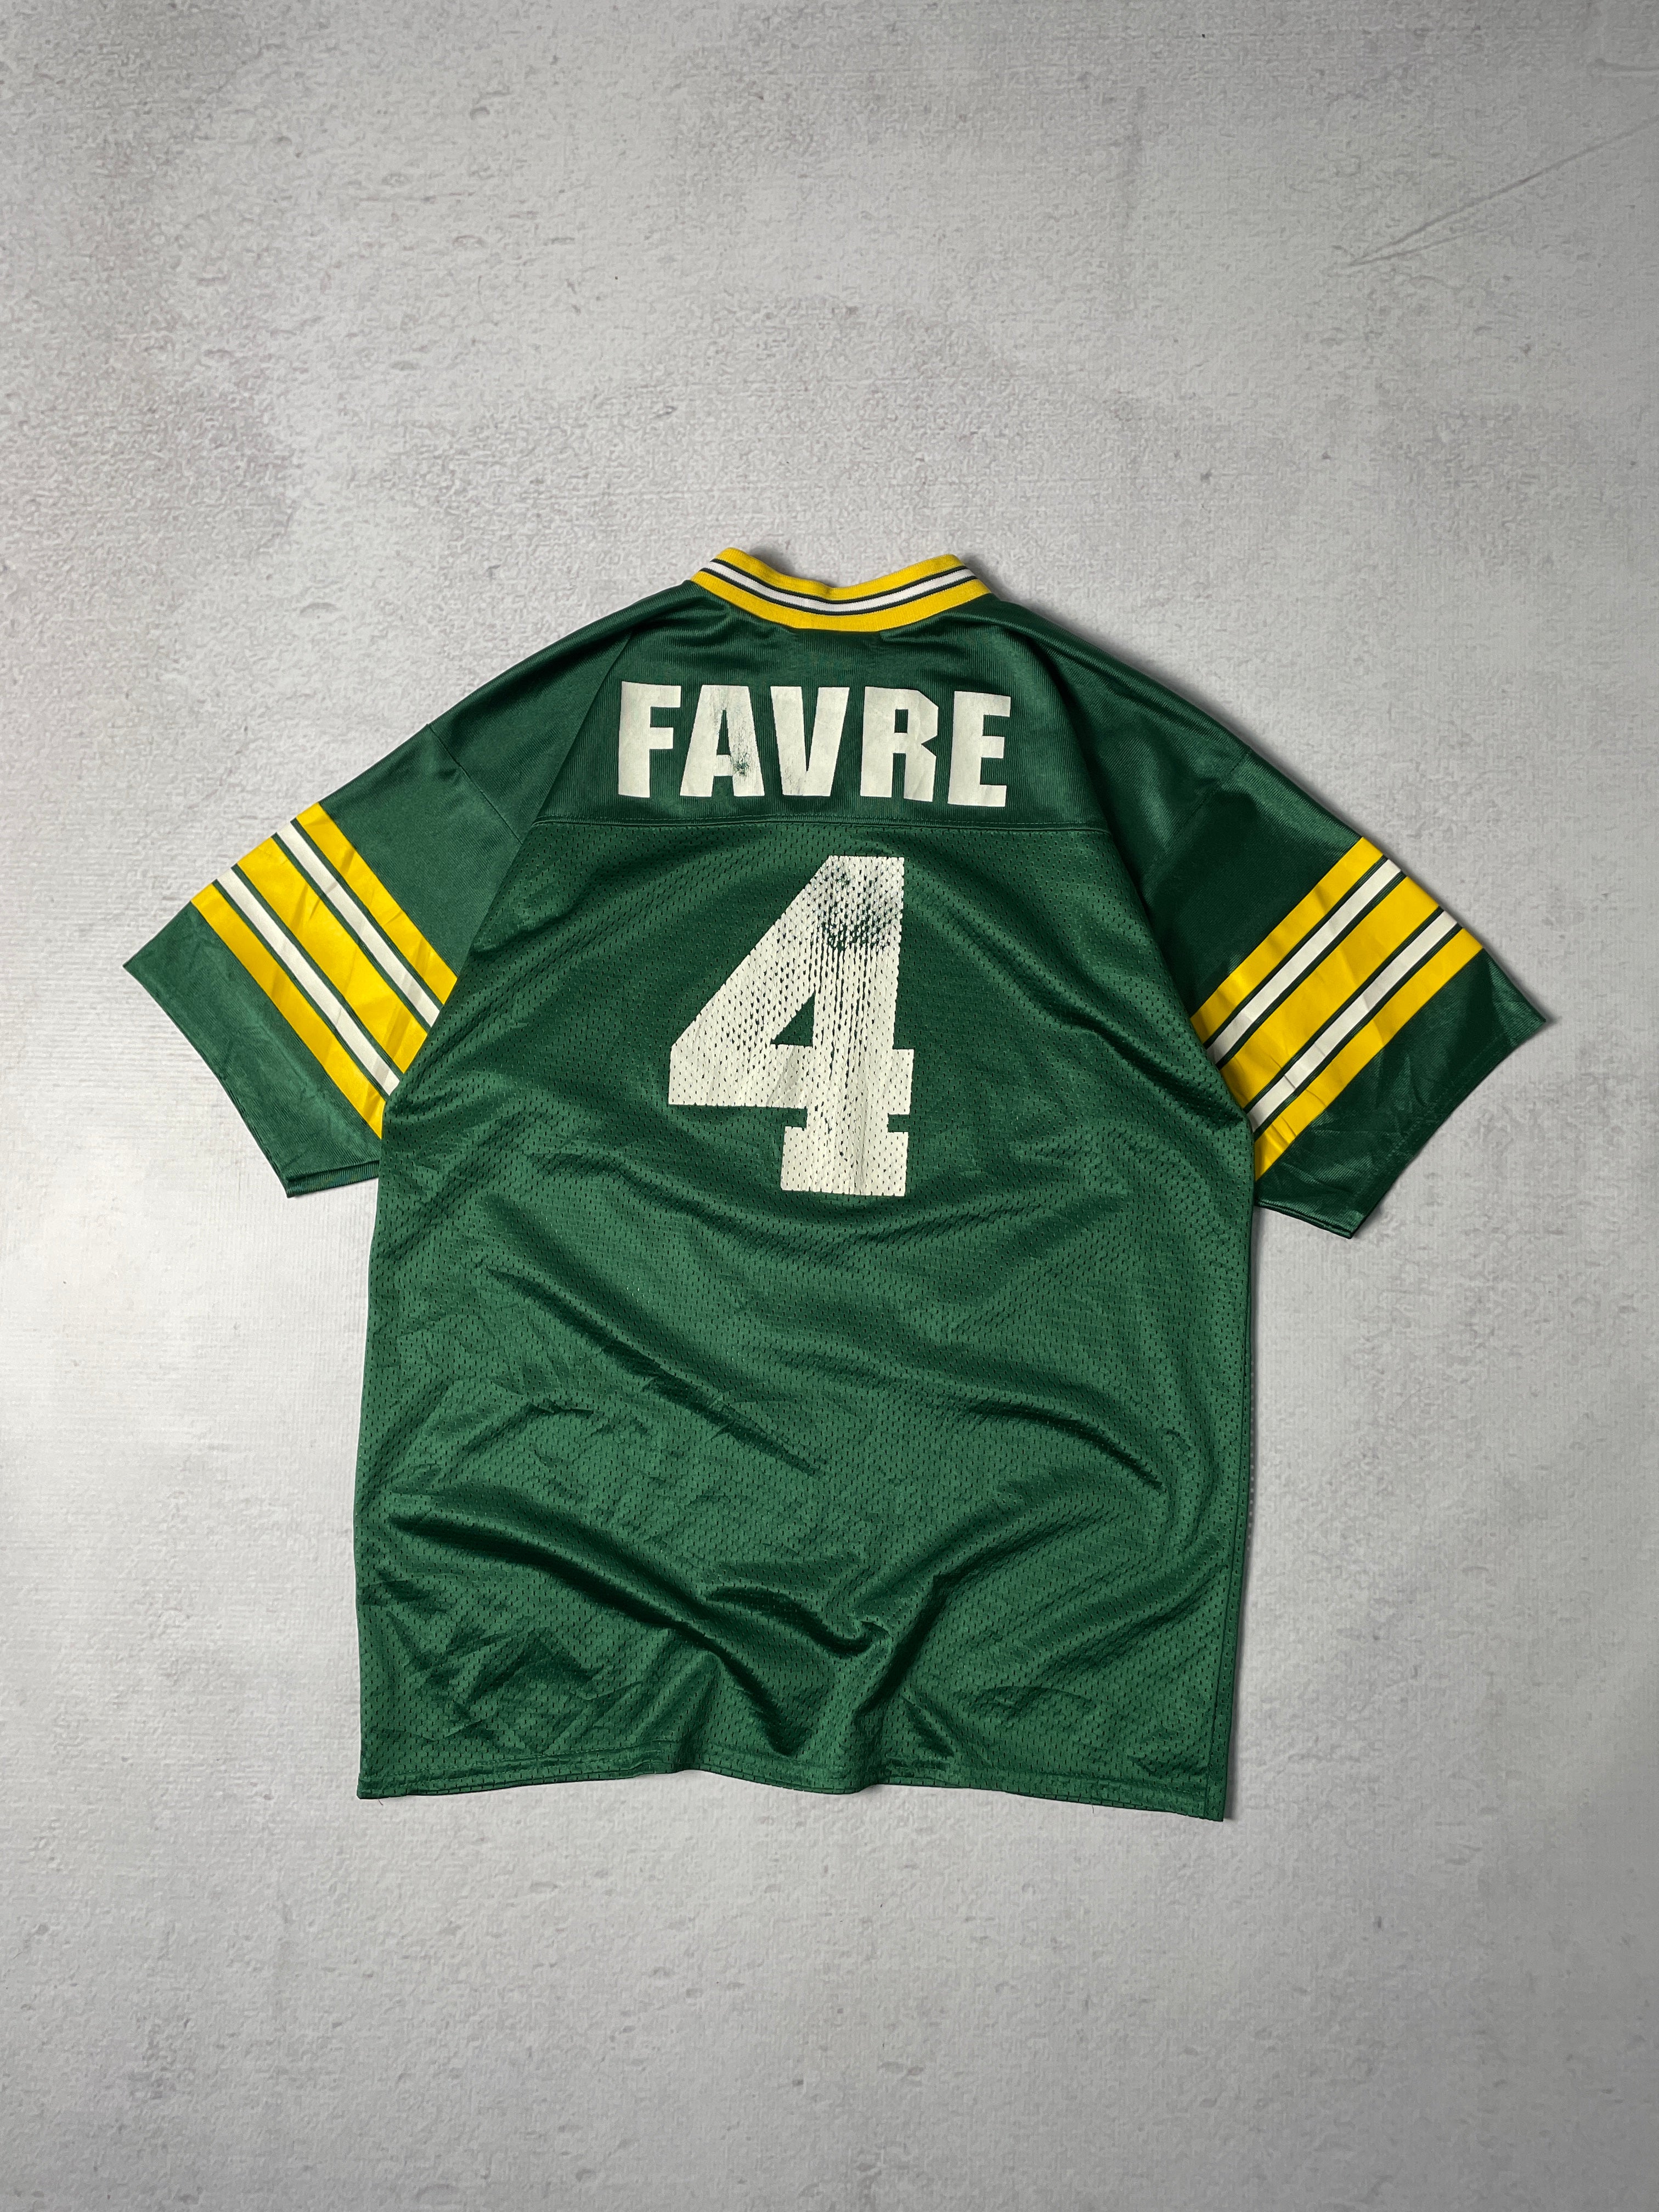 Vintage NFL Green Bay Packers Brett Favre #4 Jersey - Men's Medium